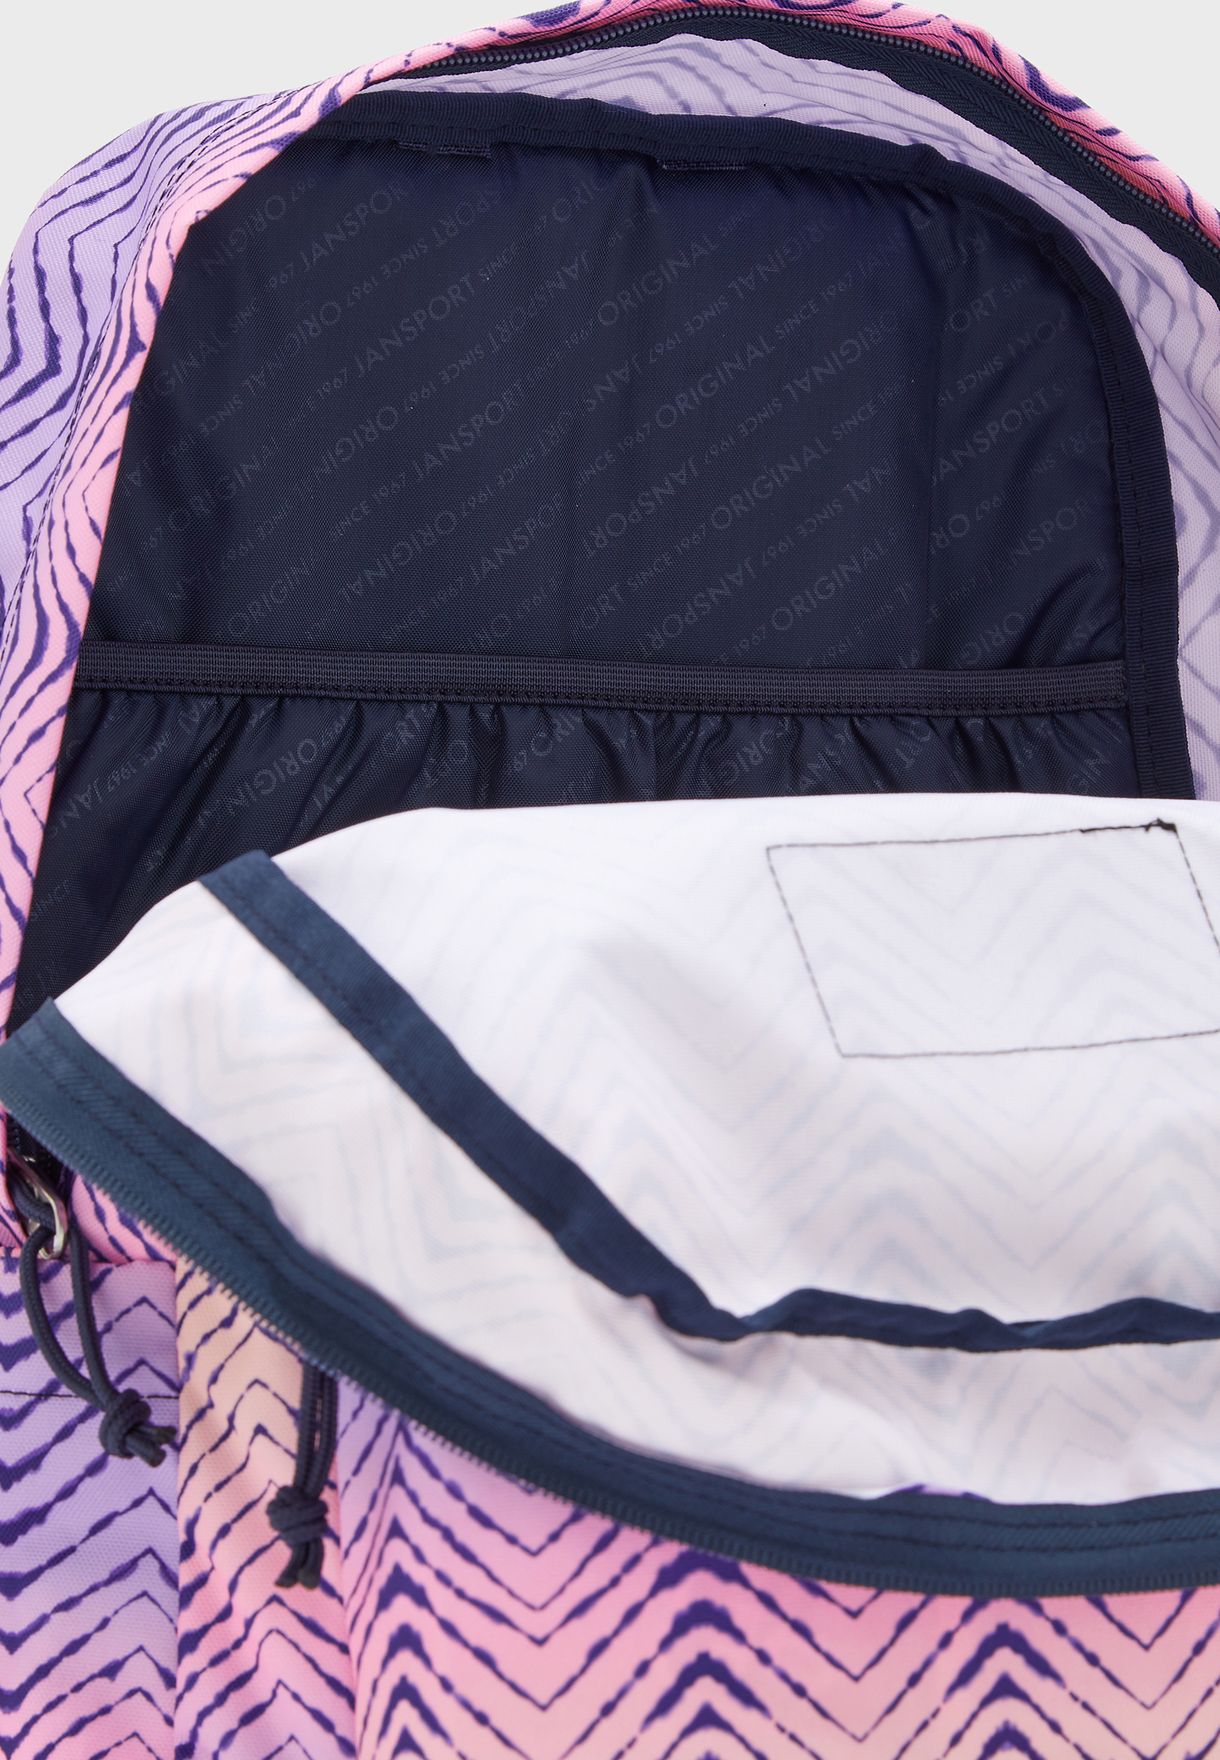 Superbreak Striped Backpack